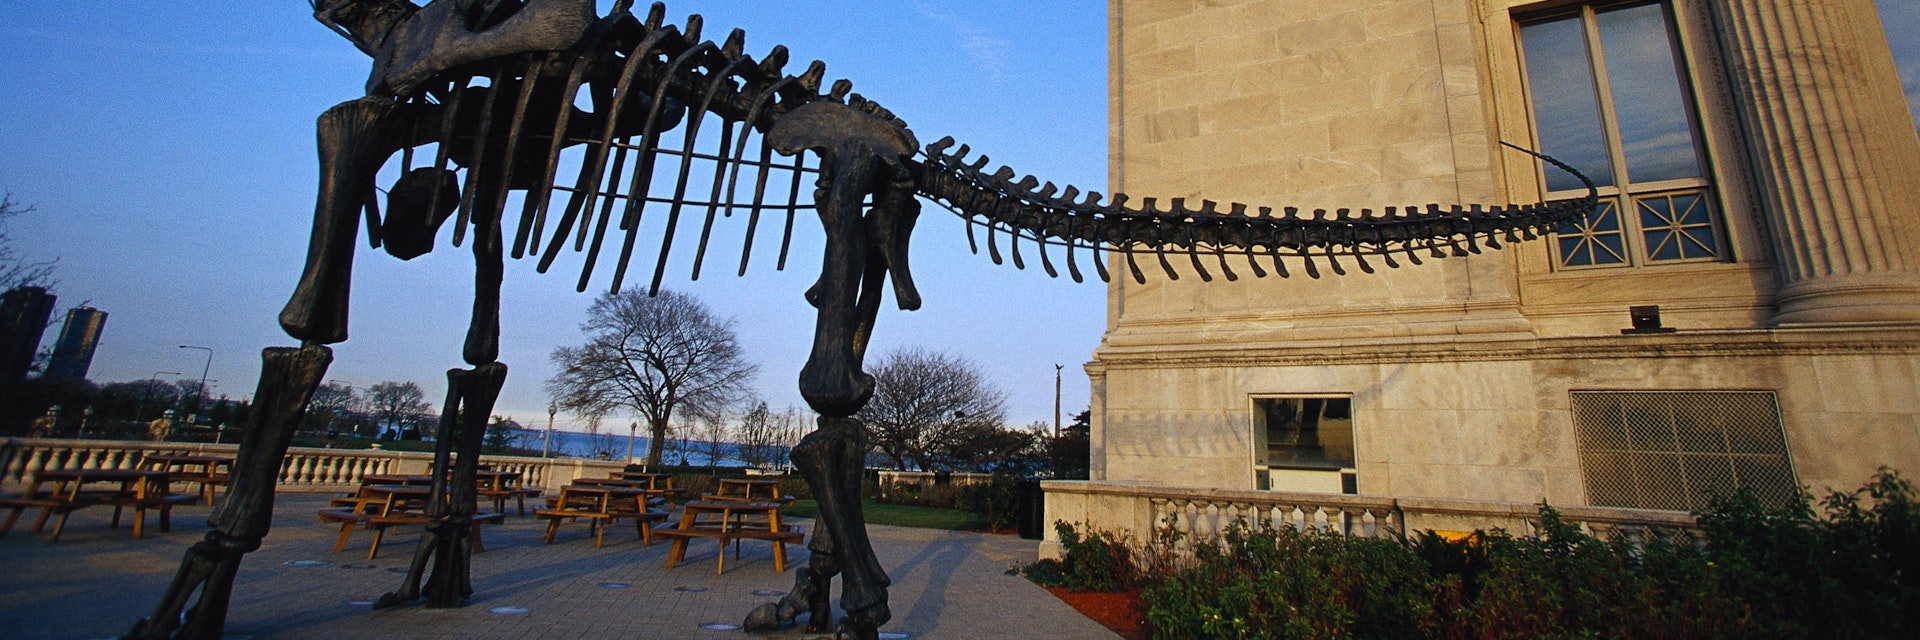 Model of Dinosaur Skeleton